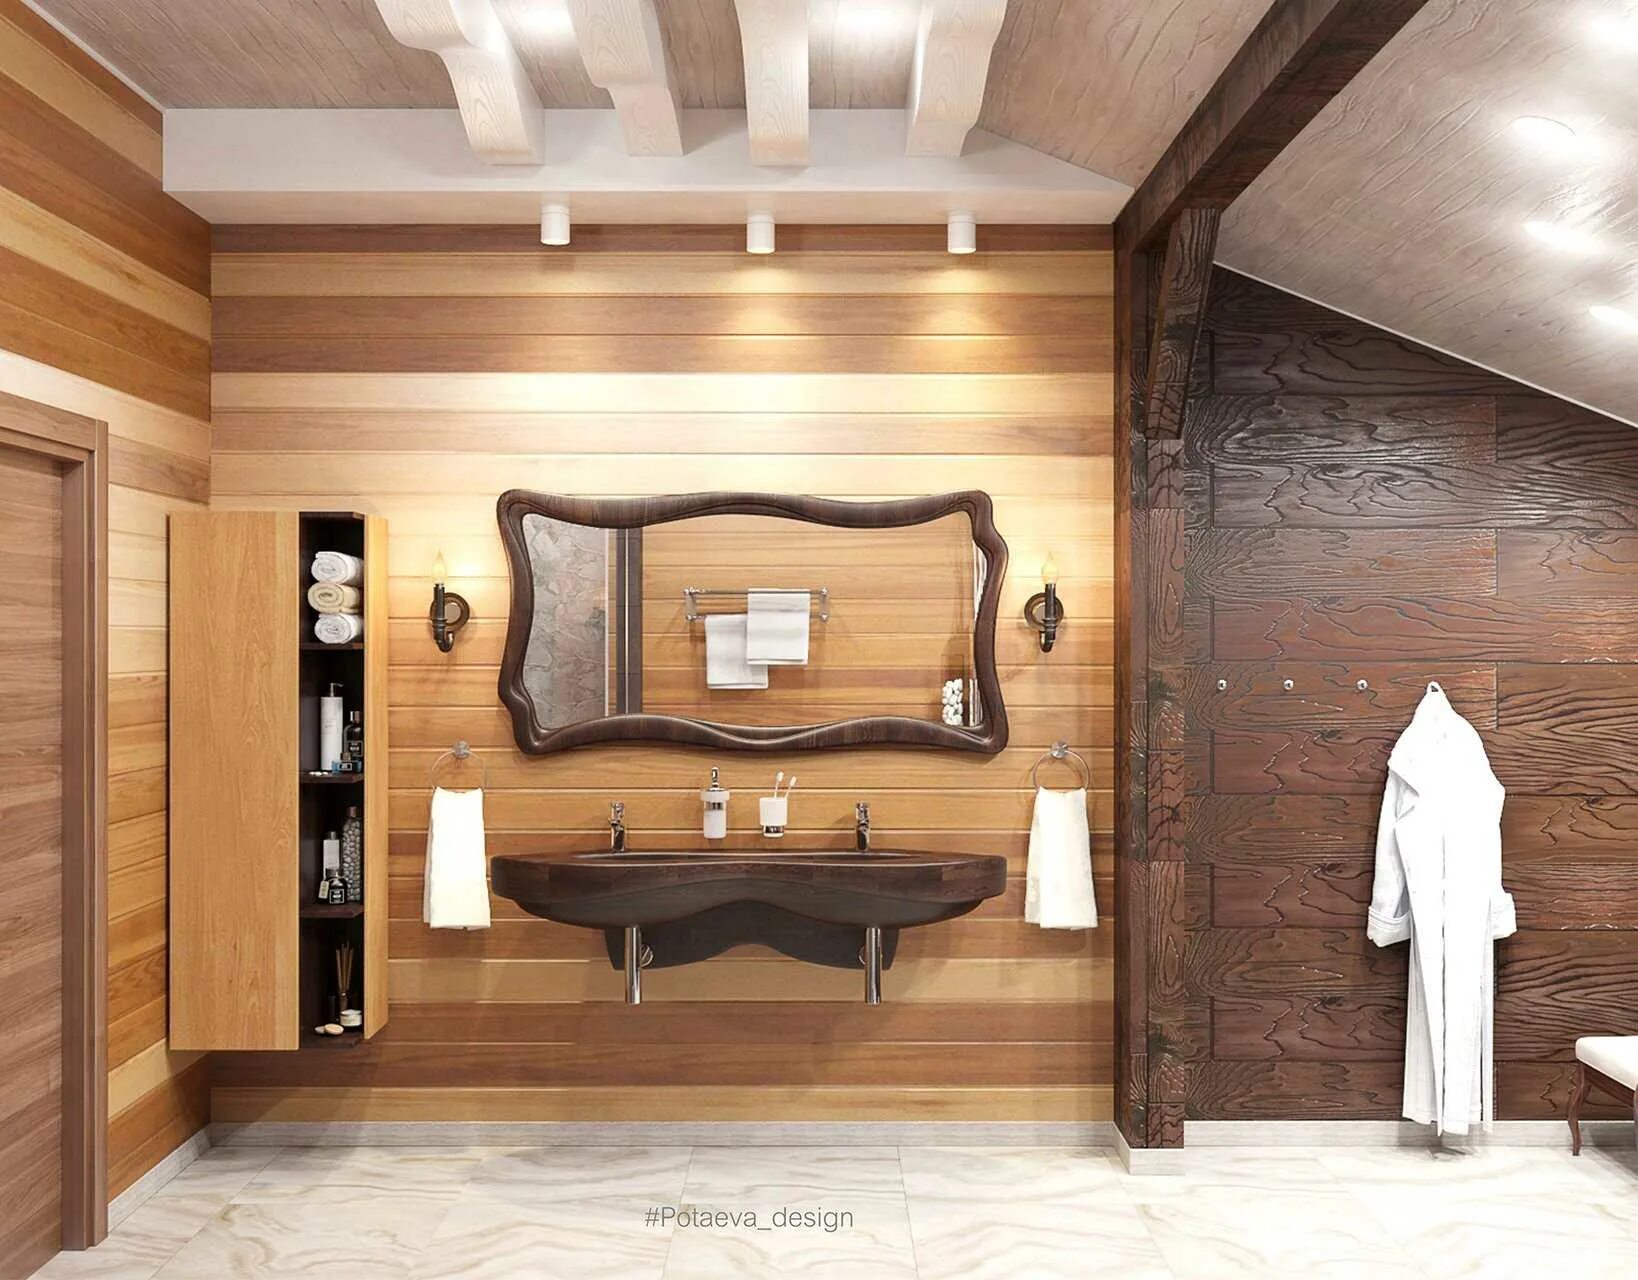 Панели дерево ванной. Деревянные панели Plydex. Деревянные панели в ванной комнате. Панели для ванной под дерево. Ванна с деревянными панелями.